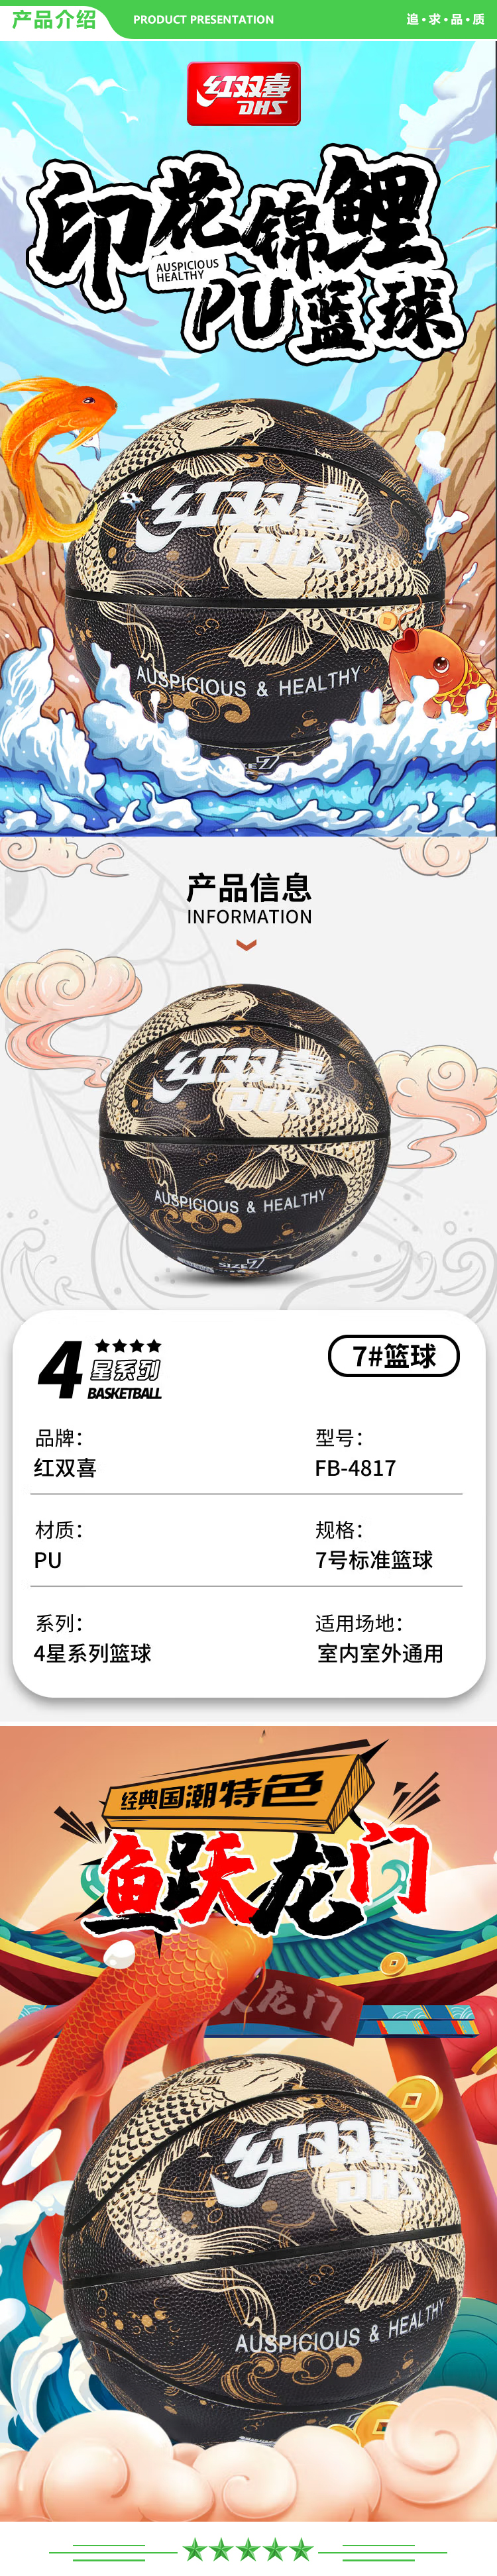 红双喜 DHS FB4817 黑金 7号篮球国风锦鲤室内外通用PU耐磨材质  (2).jpg